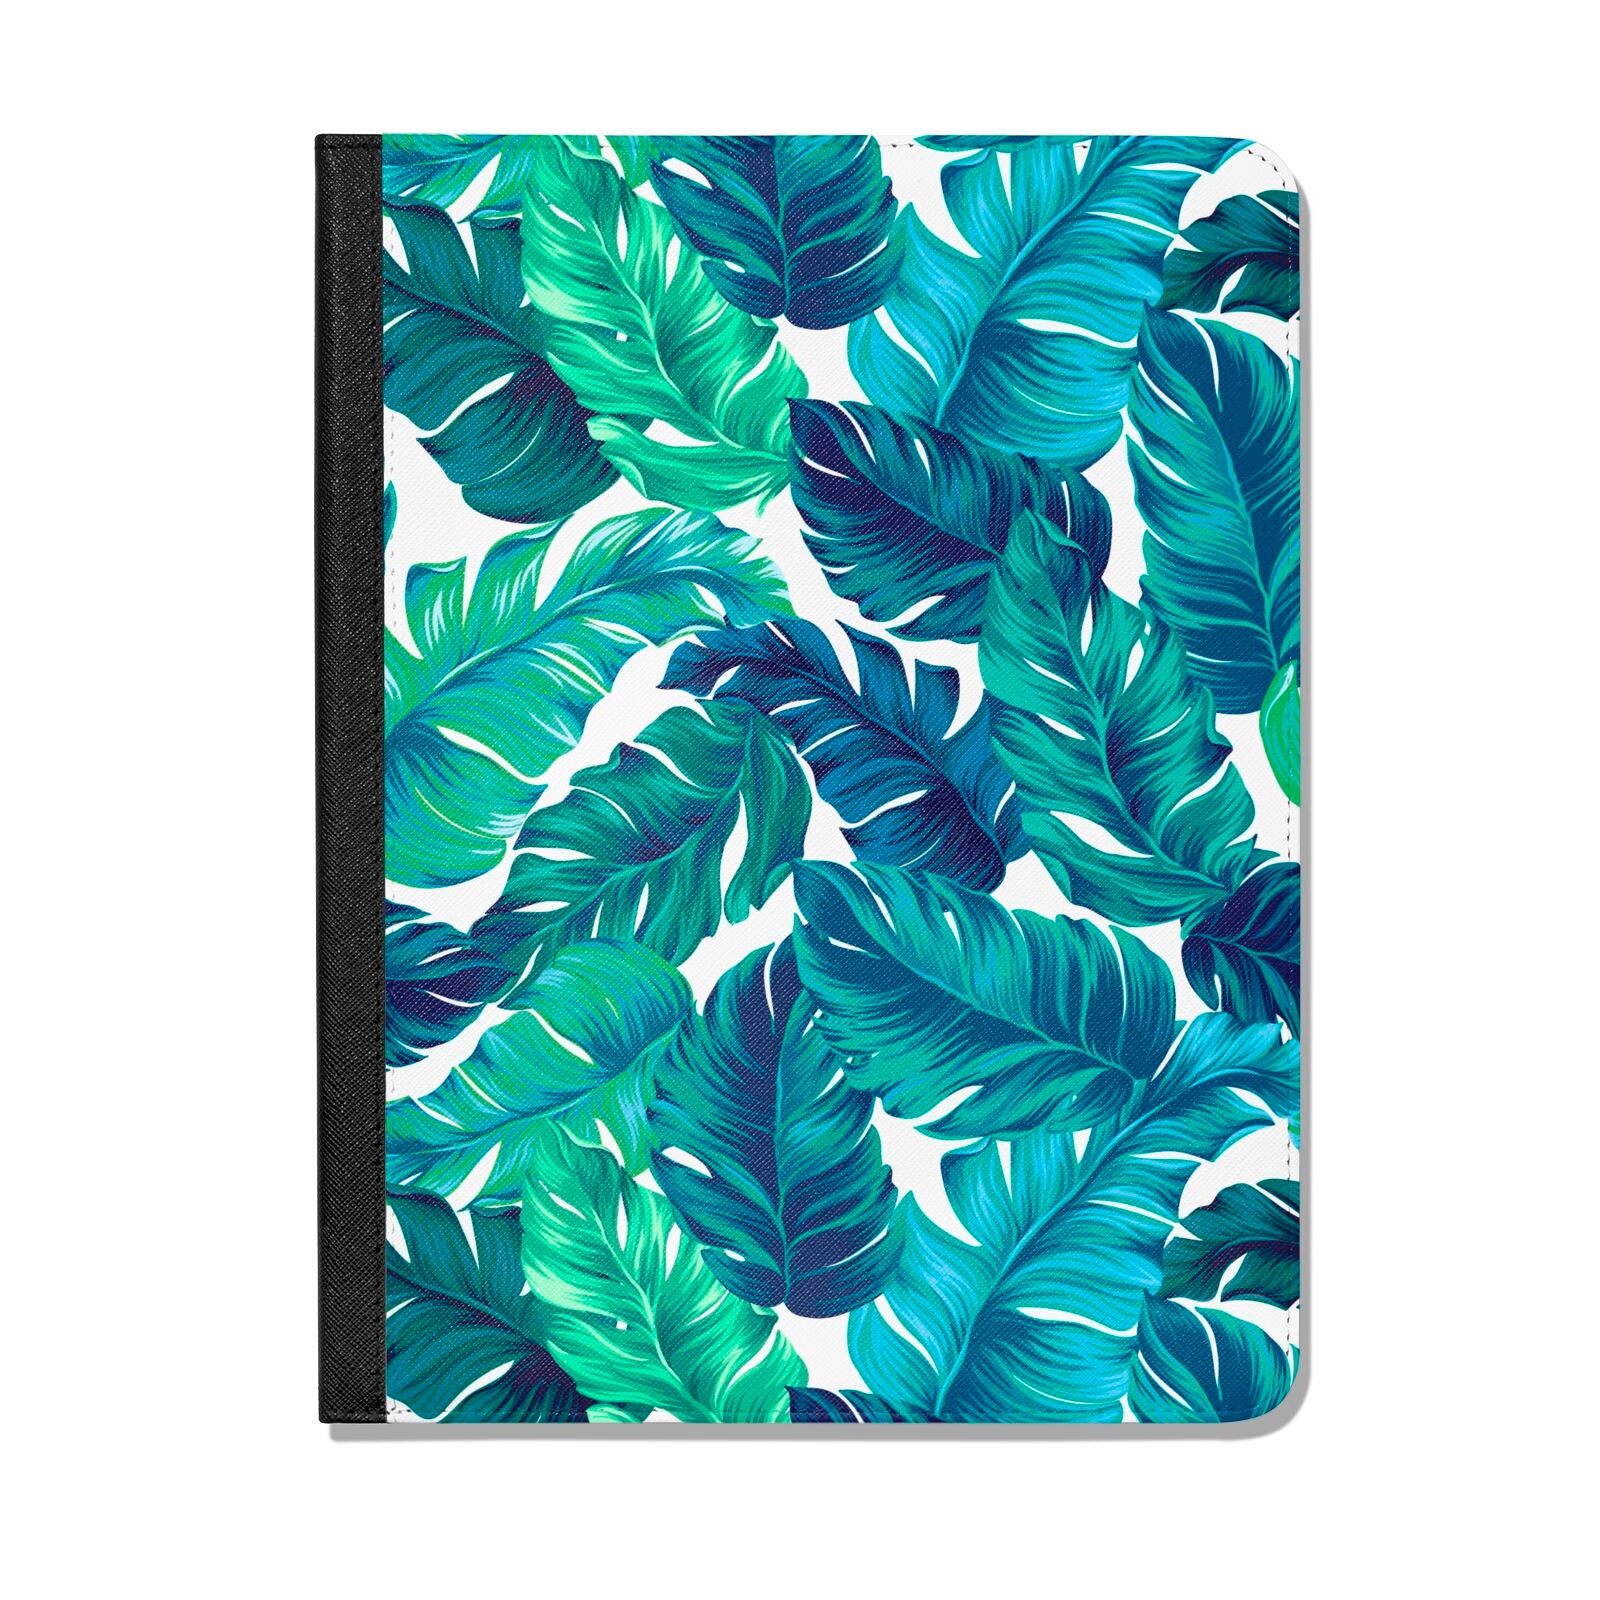 Tropical Leaves Apple iPad Leather Folio Case